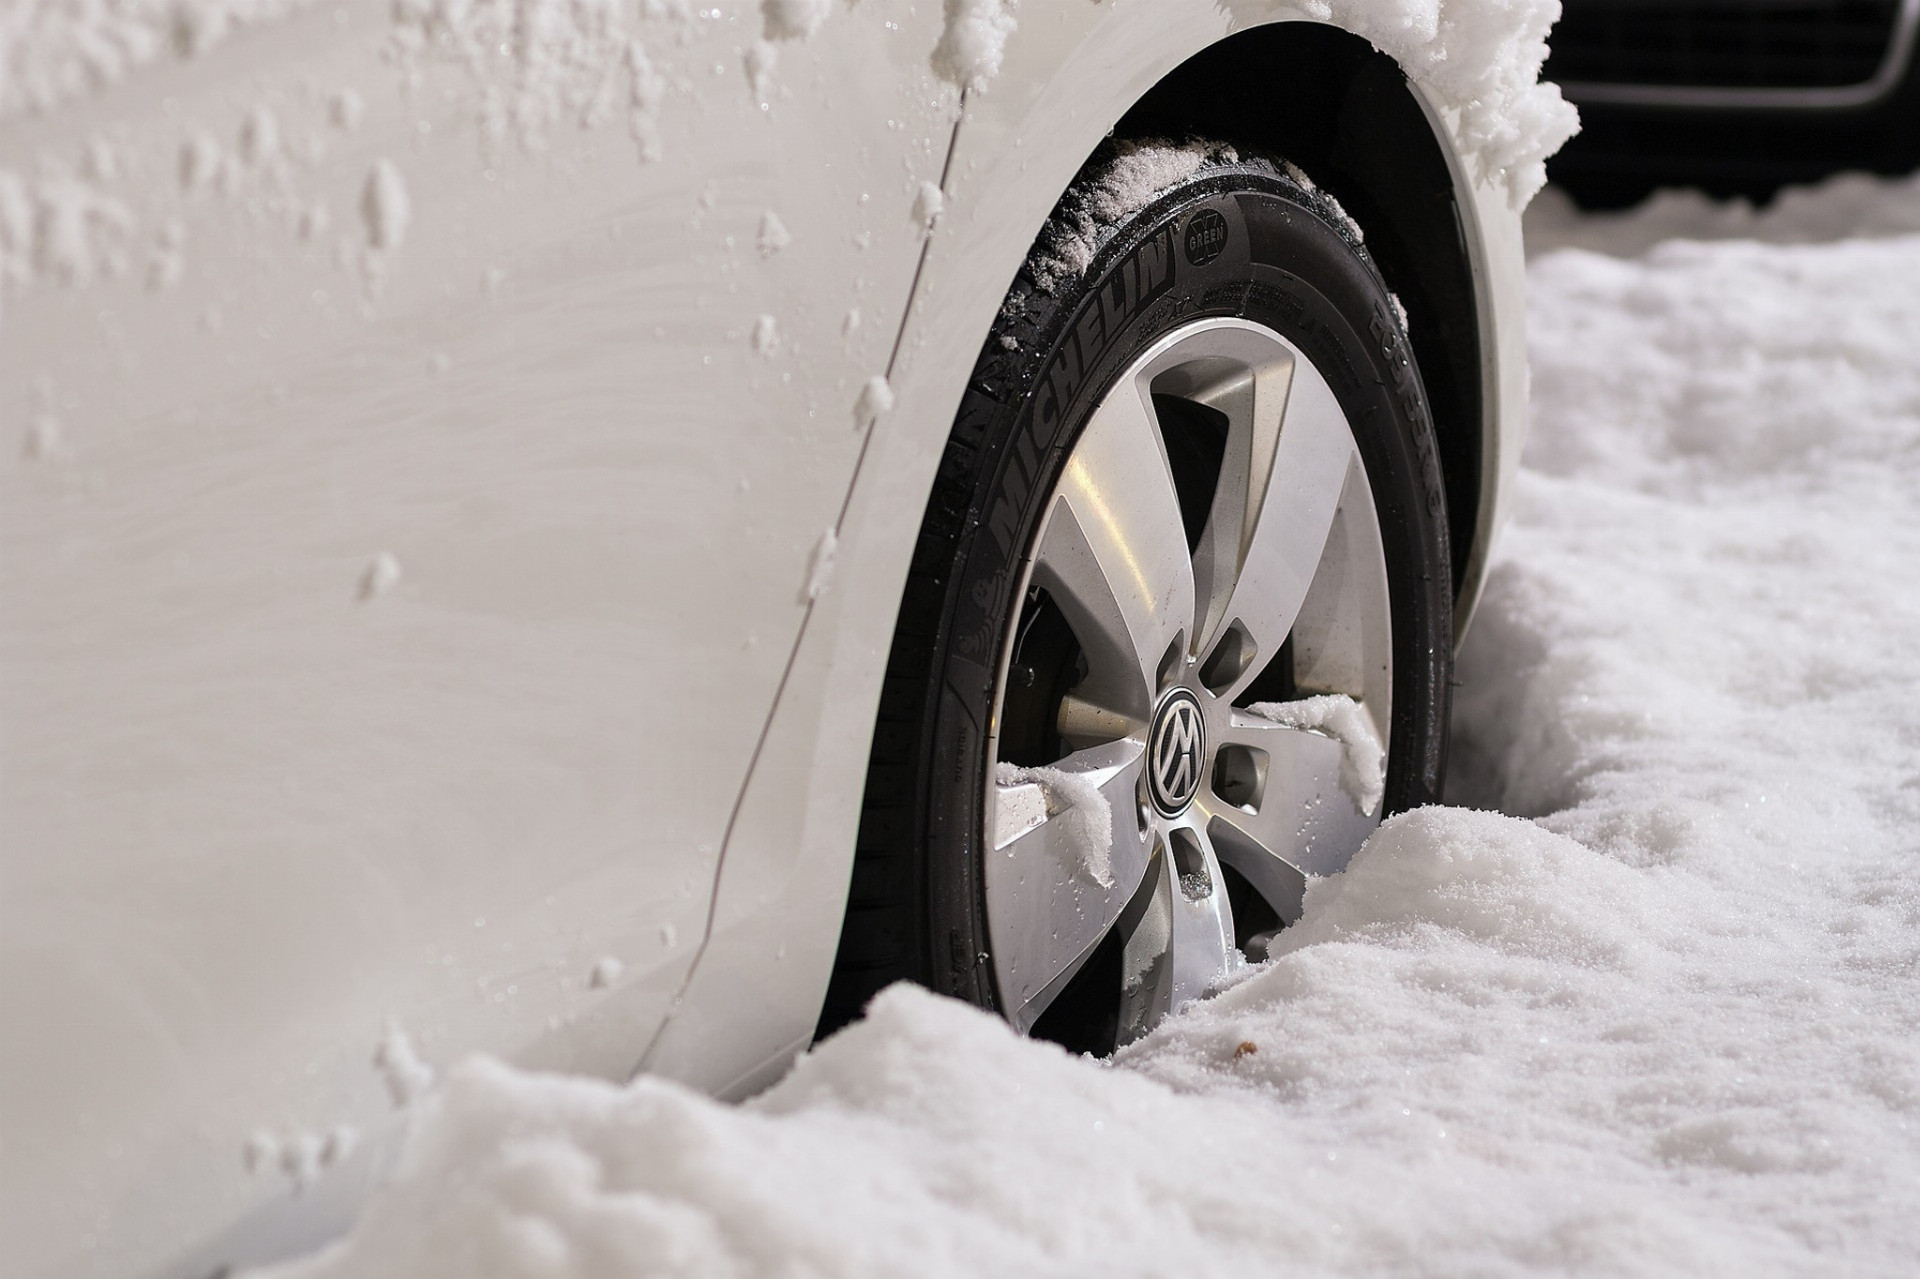 Zimné obutie pneumatík by v tomto čase malo byť rozhodne samozrejmosťou, no treba skontrolovať aj ich stav. „Zimné pneumatiky by mali mať hĺbku dezénu viac ako štyri milimetre. Hlboký dezén lepšie drží smer, pneumatiky majú výrazne kratšiu brzdnú dráhu a dokážu tak udržať auto na ceste aj v extrémnych podmienkach,“ upozorňuje Peter Kundlák. Obdobne pred cestou určite skontrolujte, či nemajú pneumatiky praskliny či iné poškodenia, ktoré by sa vám na ceste mohli vypomstiť. Skontrolujte aj tlak v pneumatikách. Ak je pneumatika podhustená, môžete ju preraziť na jame, ktorú pod snehom nezbadáte a najmä na slovenských cestách ich je počas zimy naozaj veľké množstvo. Vážna dopravná nehoda hrozí aj pri prehustených pneumatikách. Pneumatika sa dotýka vozovky len stredom dezénu, čím nemá nielen potrebnú trakciu, ale môže sa dokonca pretrhnúť.